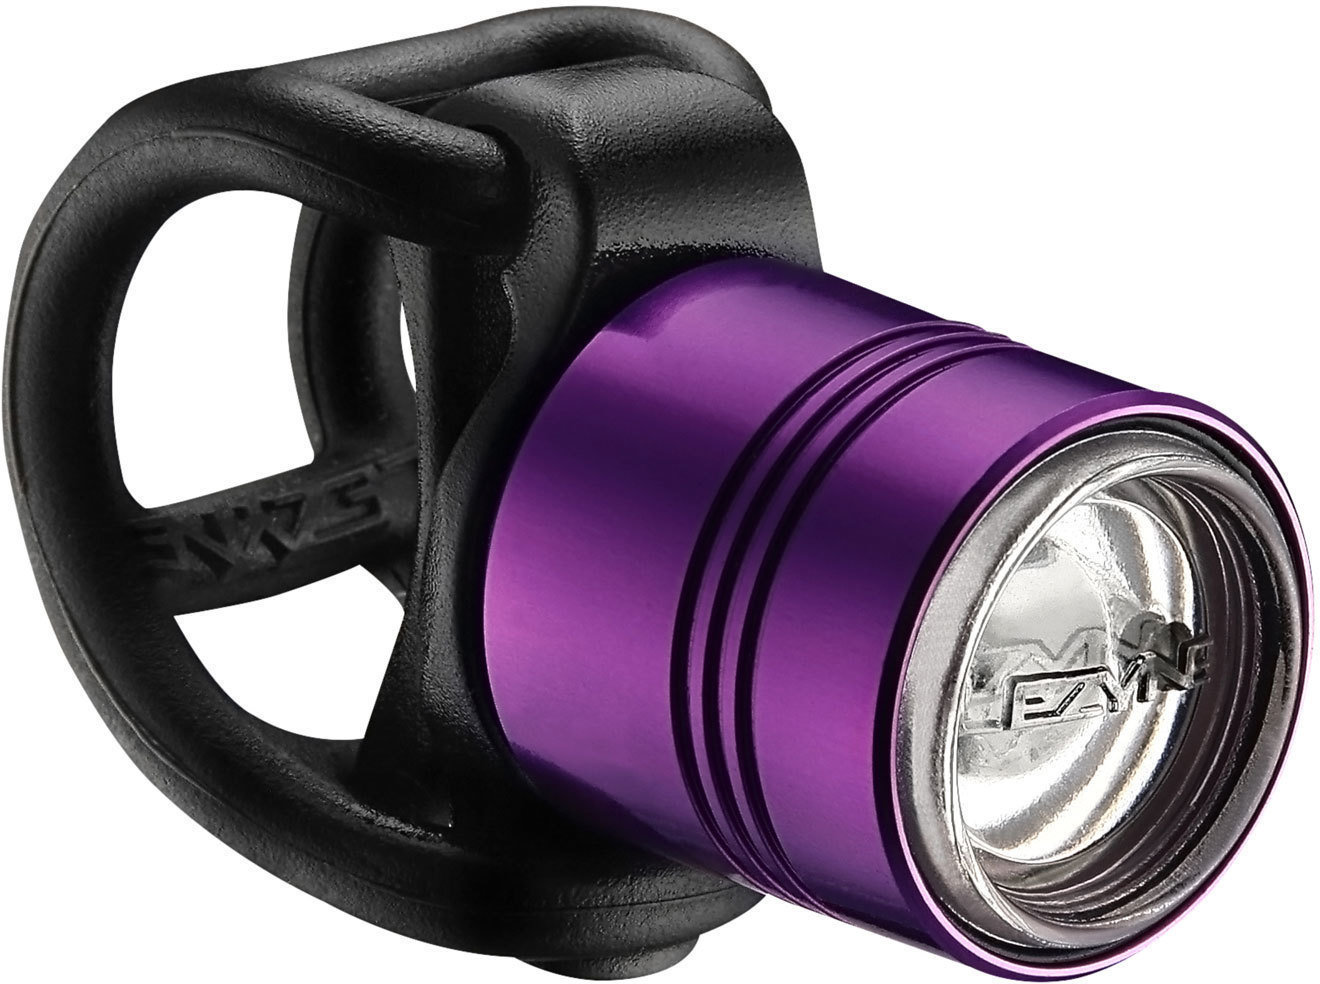 Μπροστινά Φώτα Ποδηλάτου Lezyne Femto Drive 15 lm Purple Μπροστινά Φώτα Ποδηλάτου